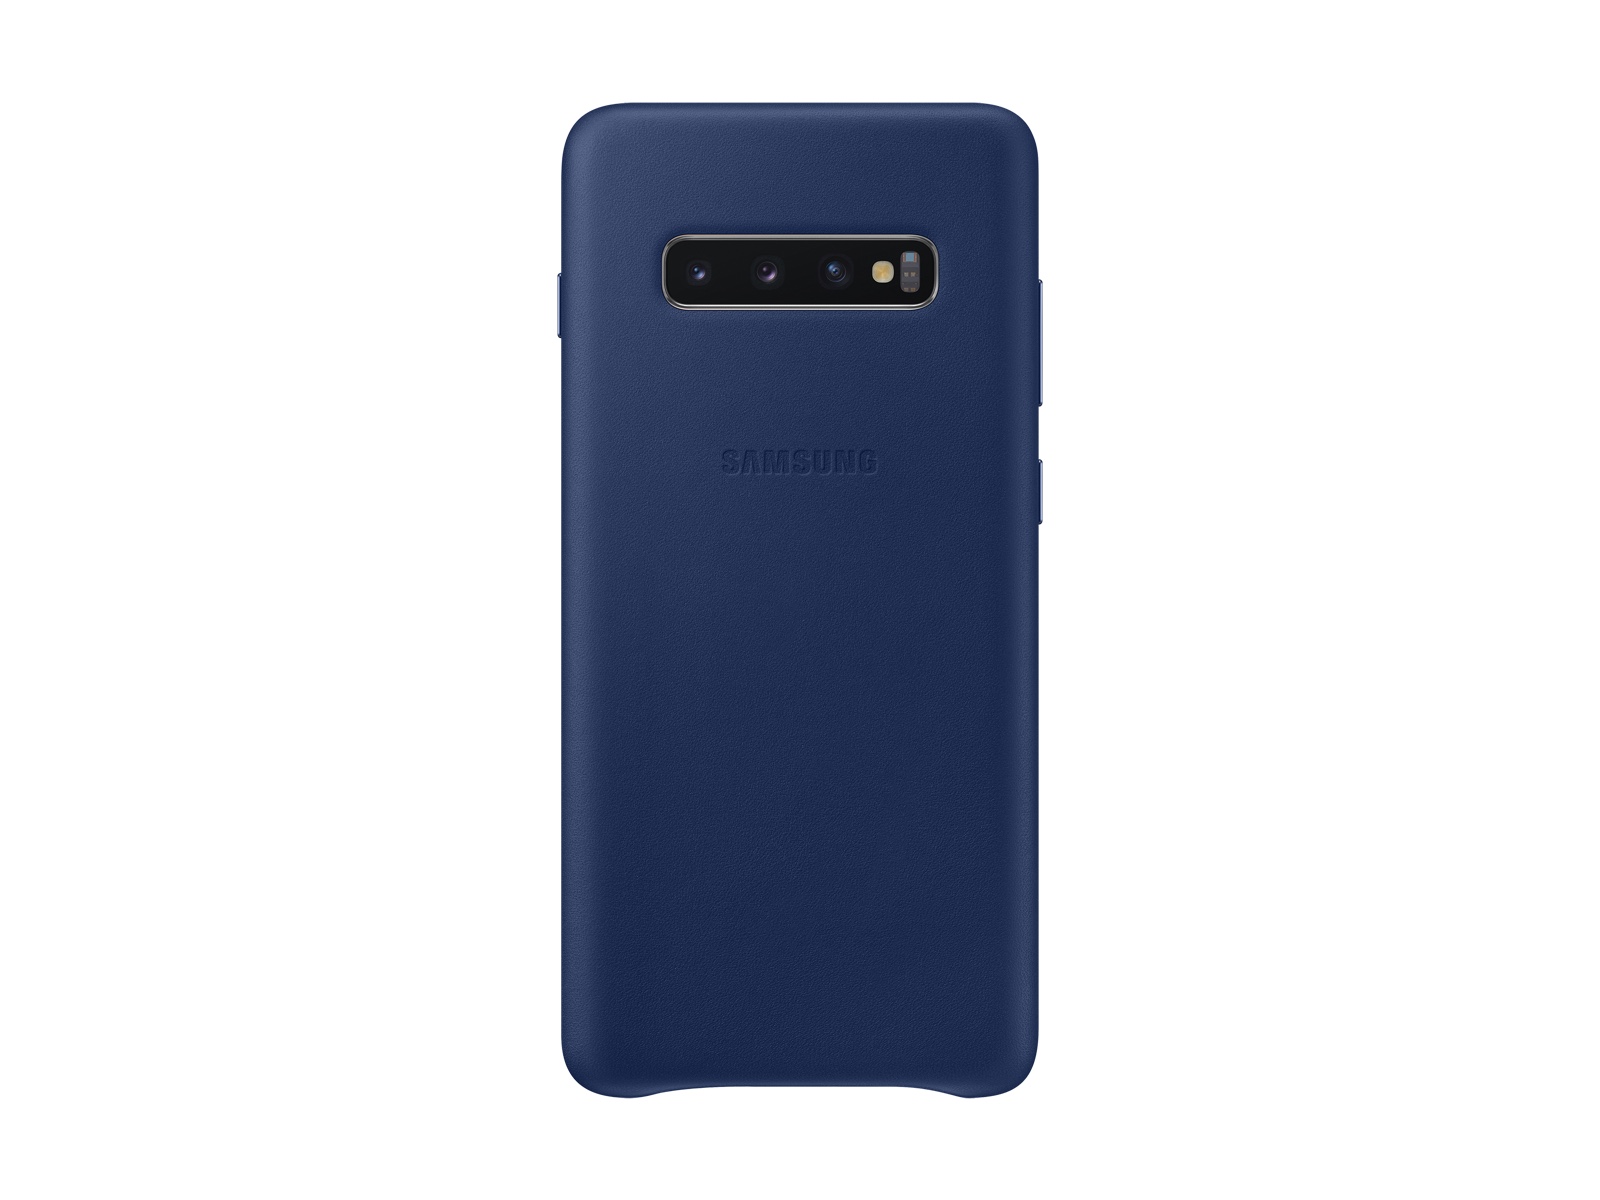 Funda trasera de piel para Galaxy S10+, accesorios para móviles azul marino - EF-VG975LNEGUS | Samsung EE.UU